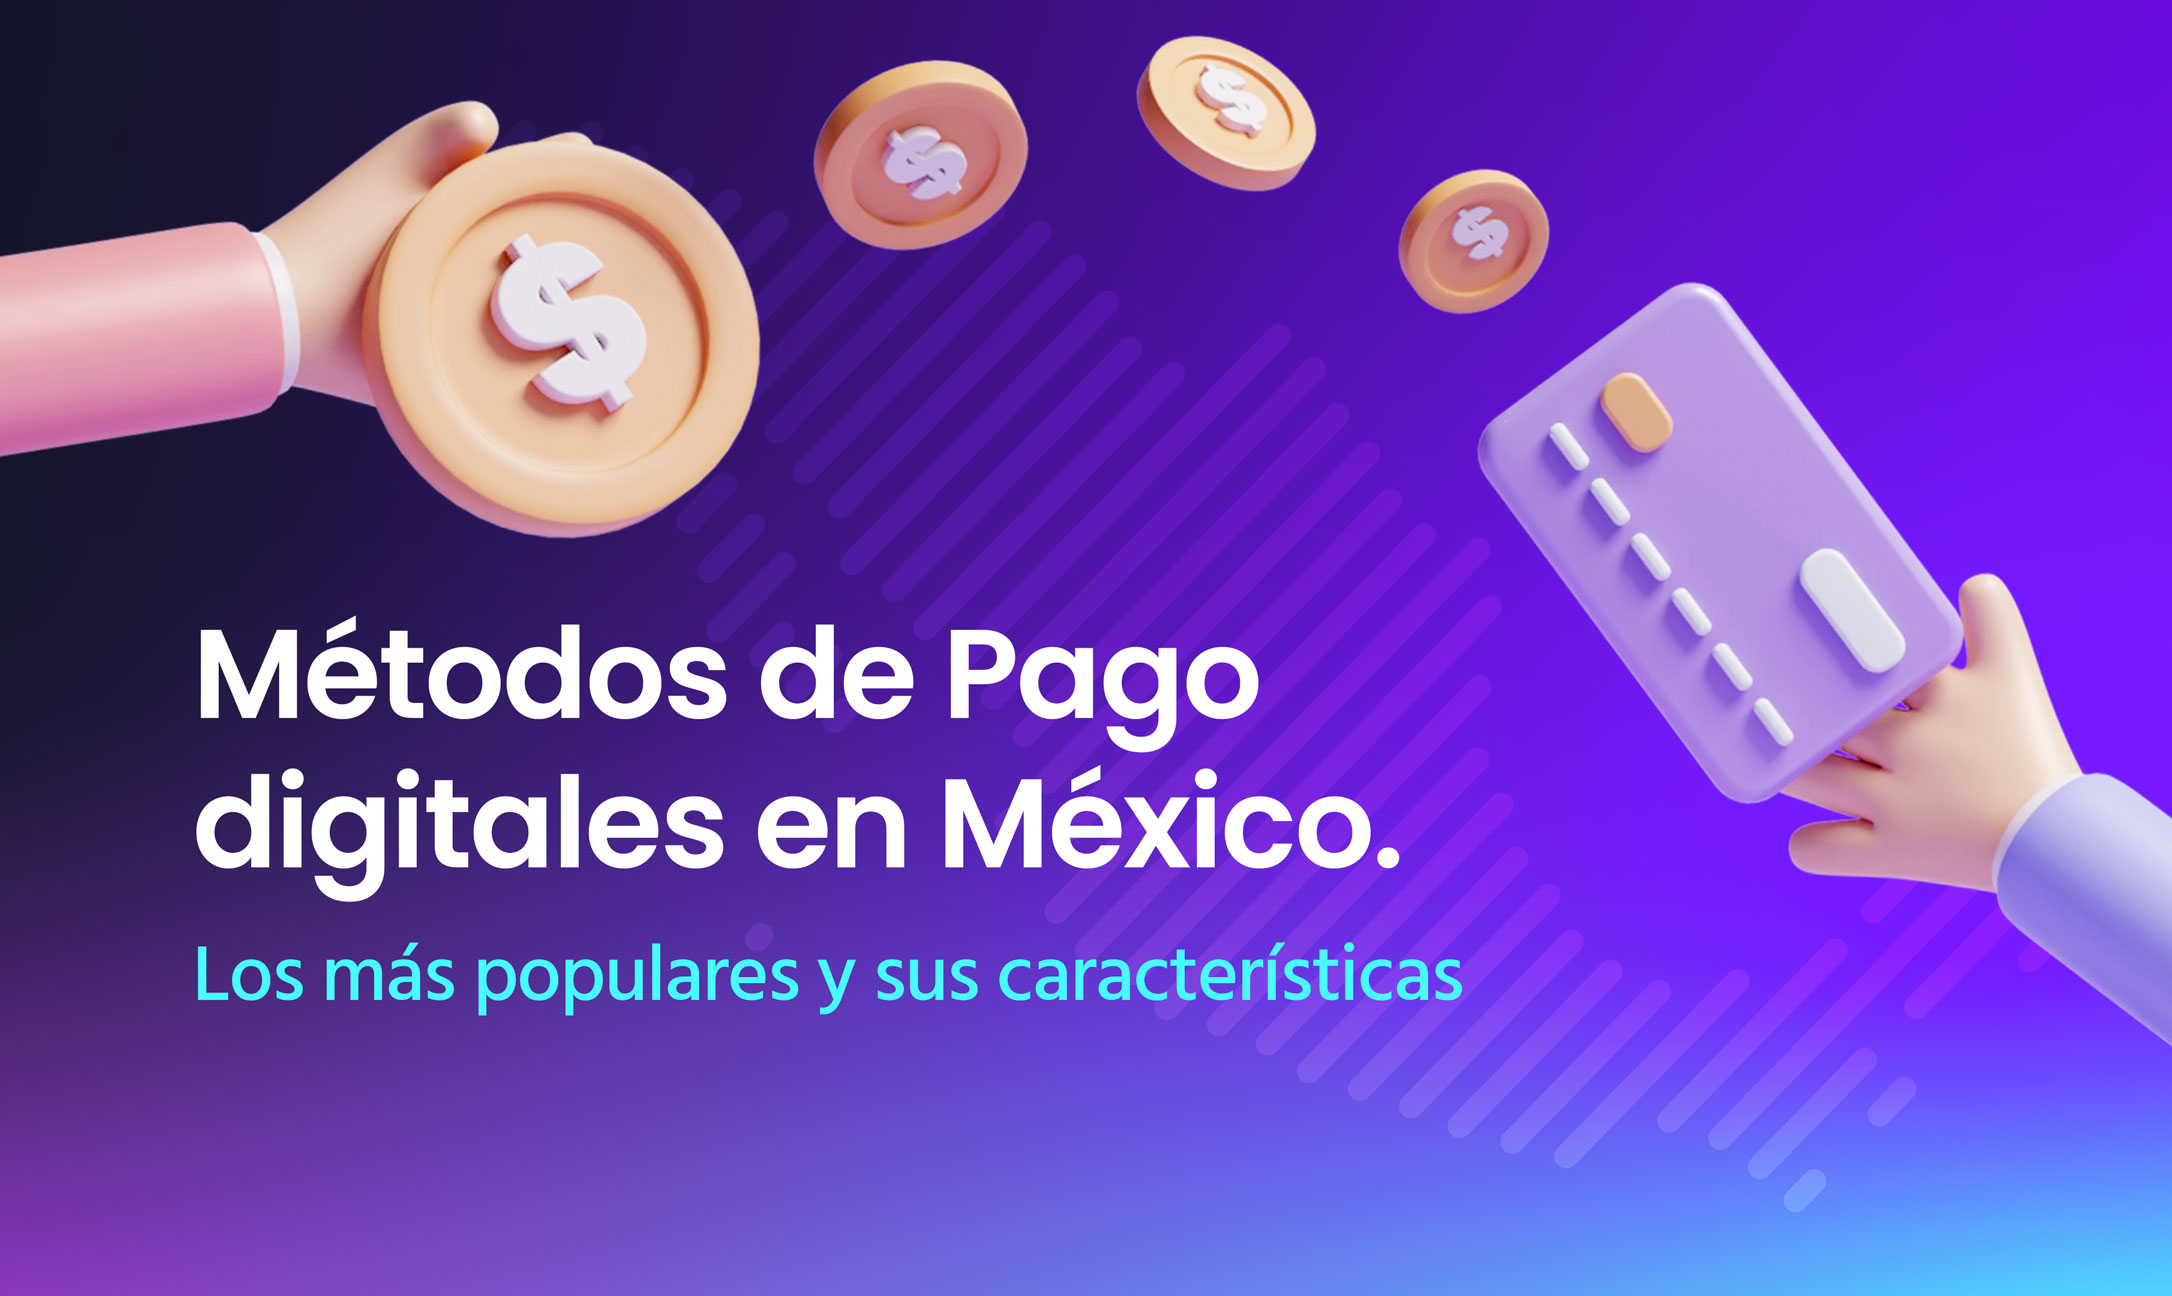 Métodos de Pago digitales en México